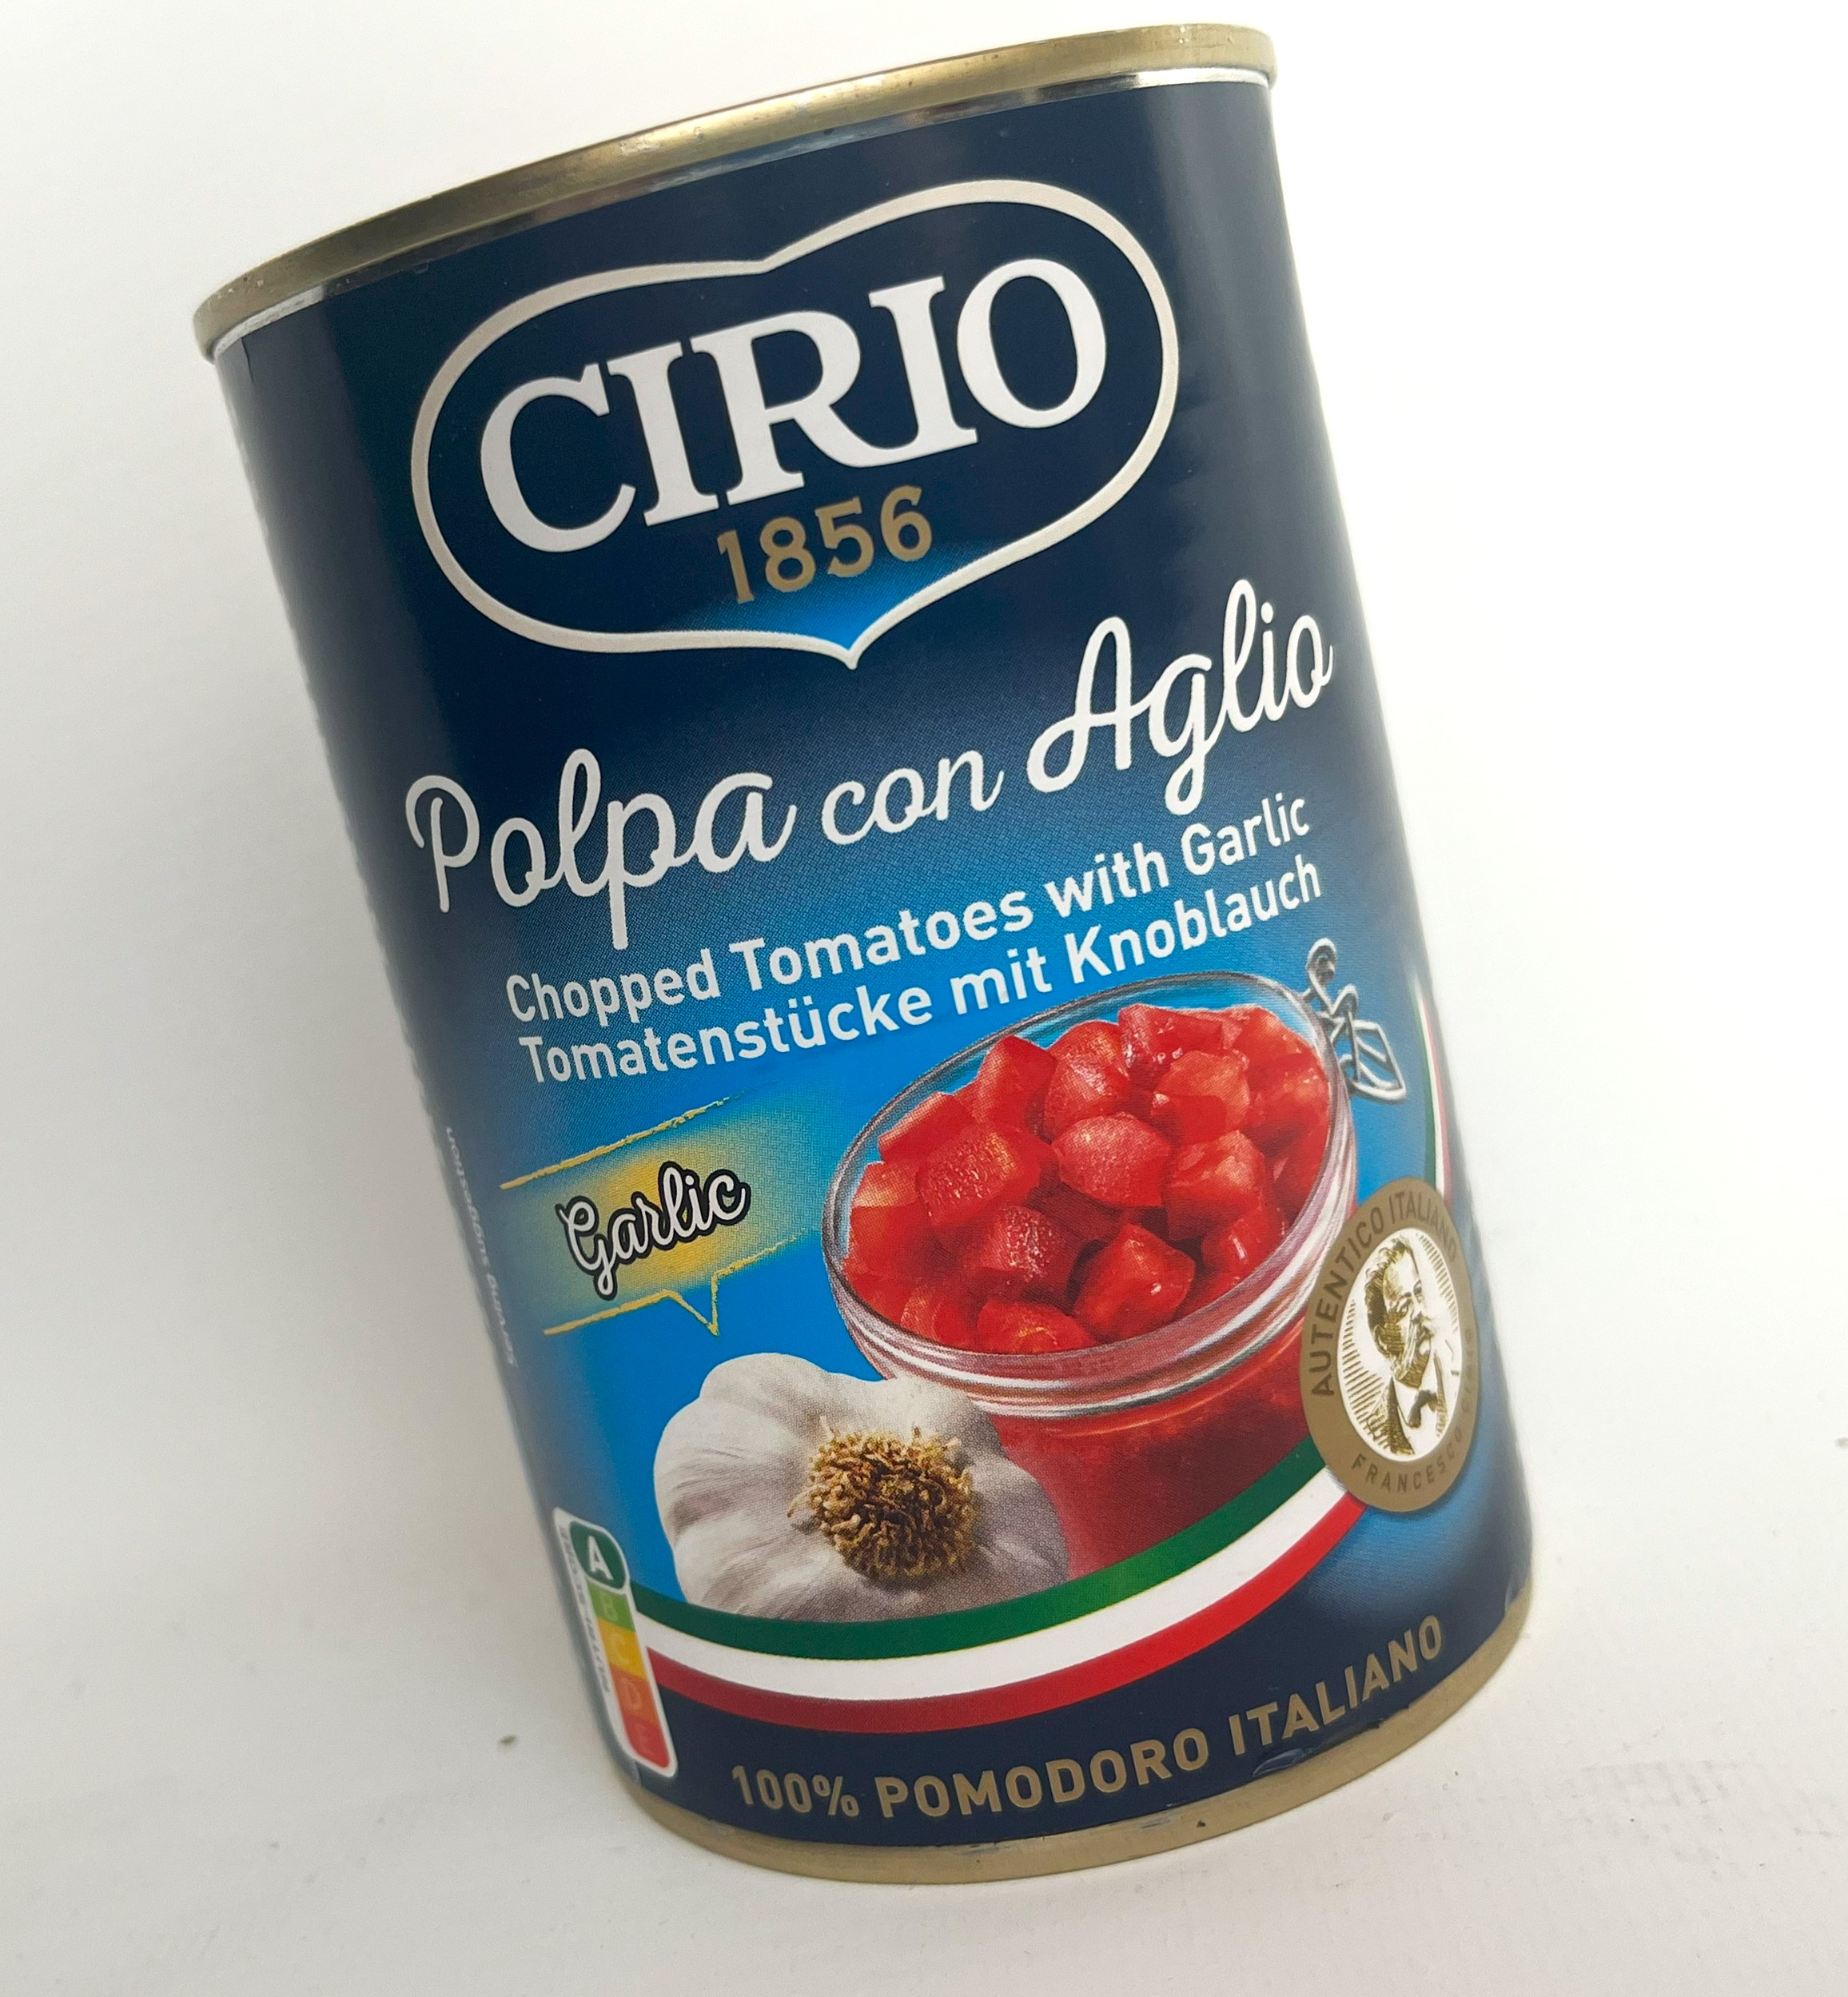 Polpa con Aglio | Francesco Cirio | 400g Nettogewicht | Tomatenstücke mit Knoblauch